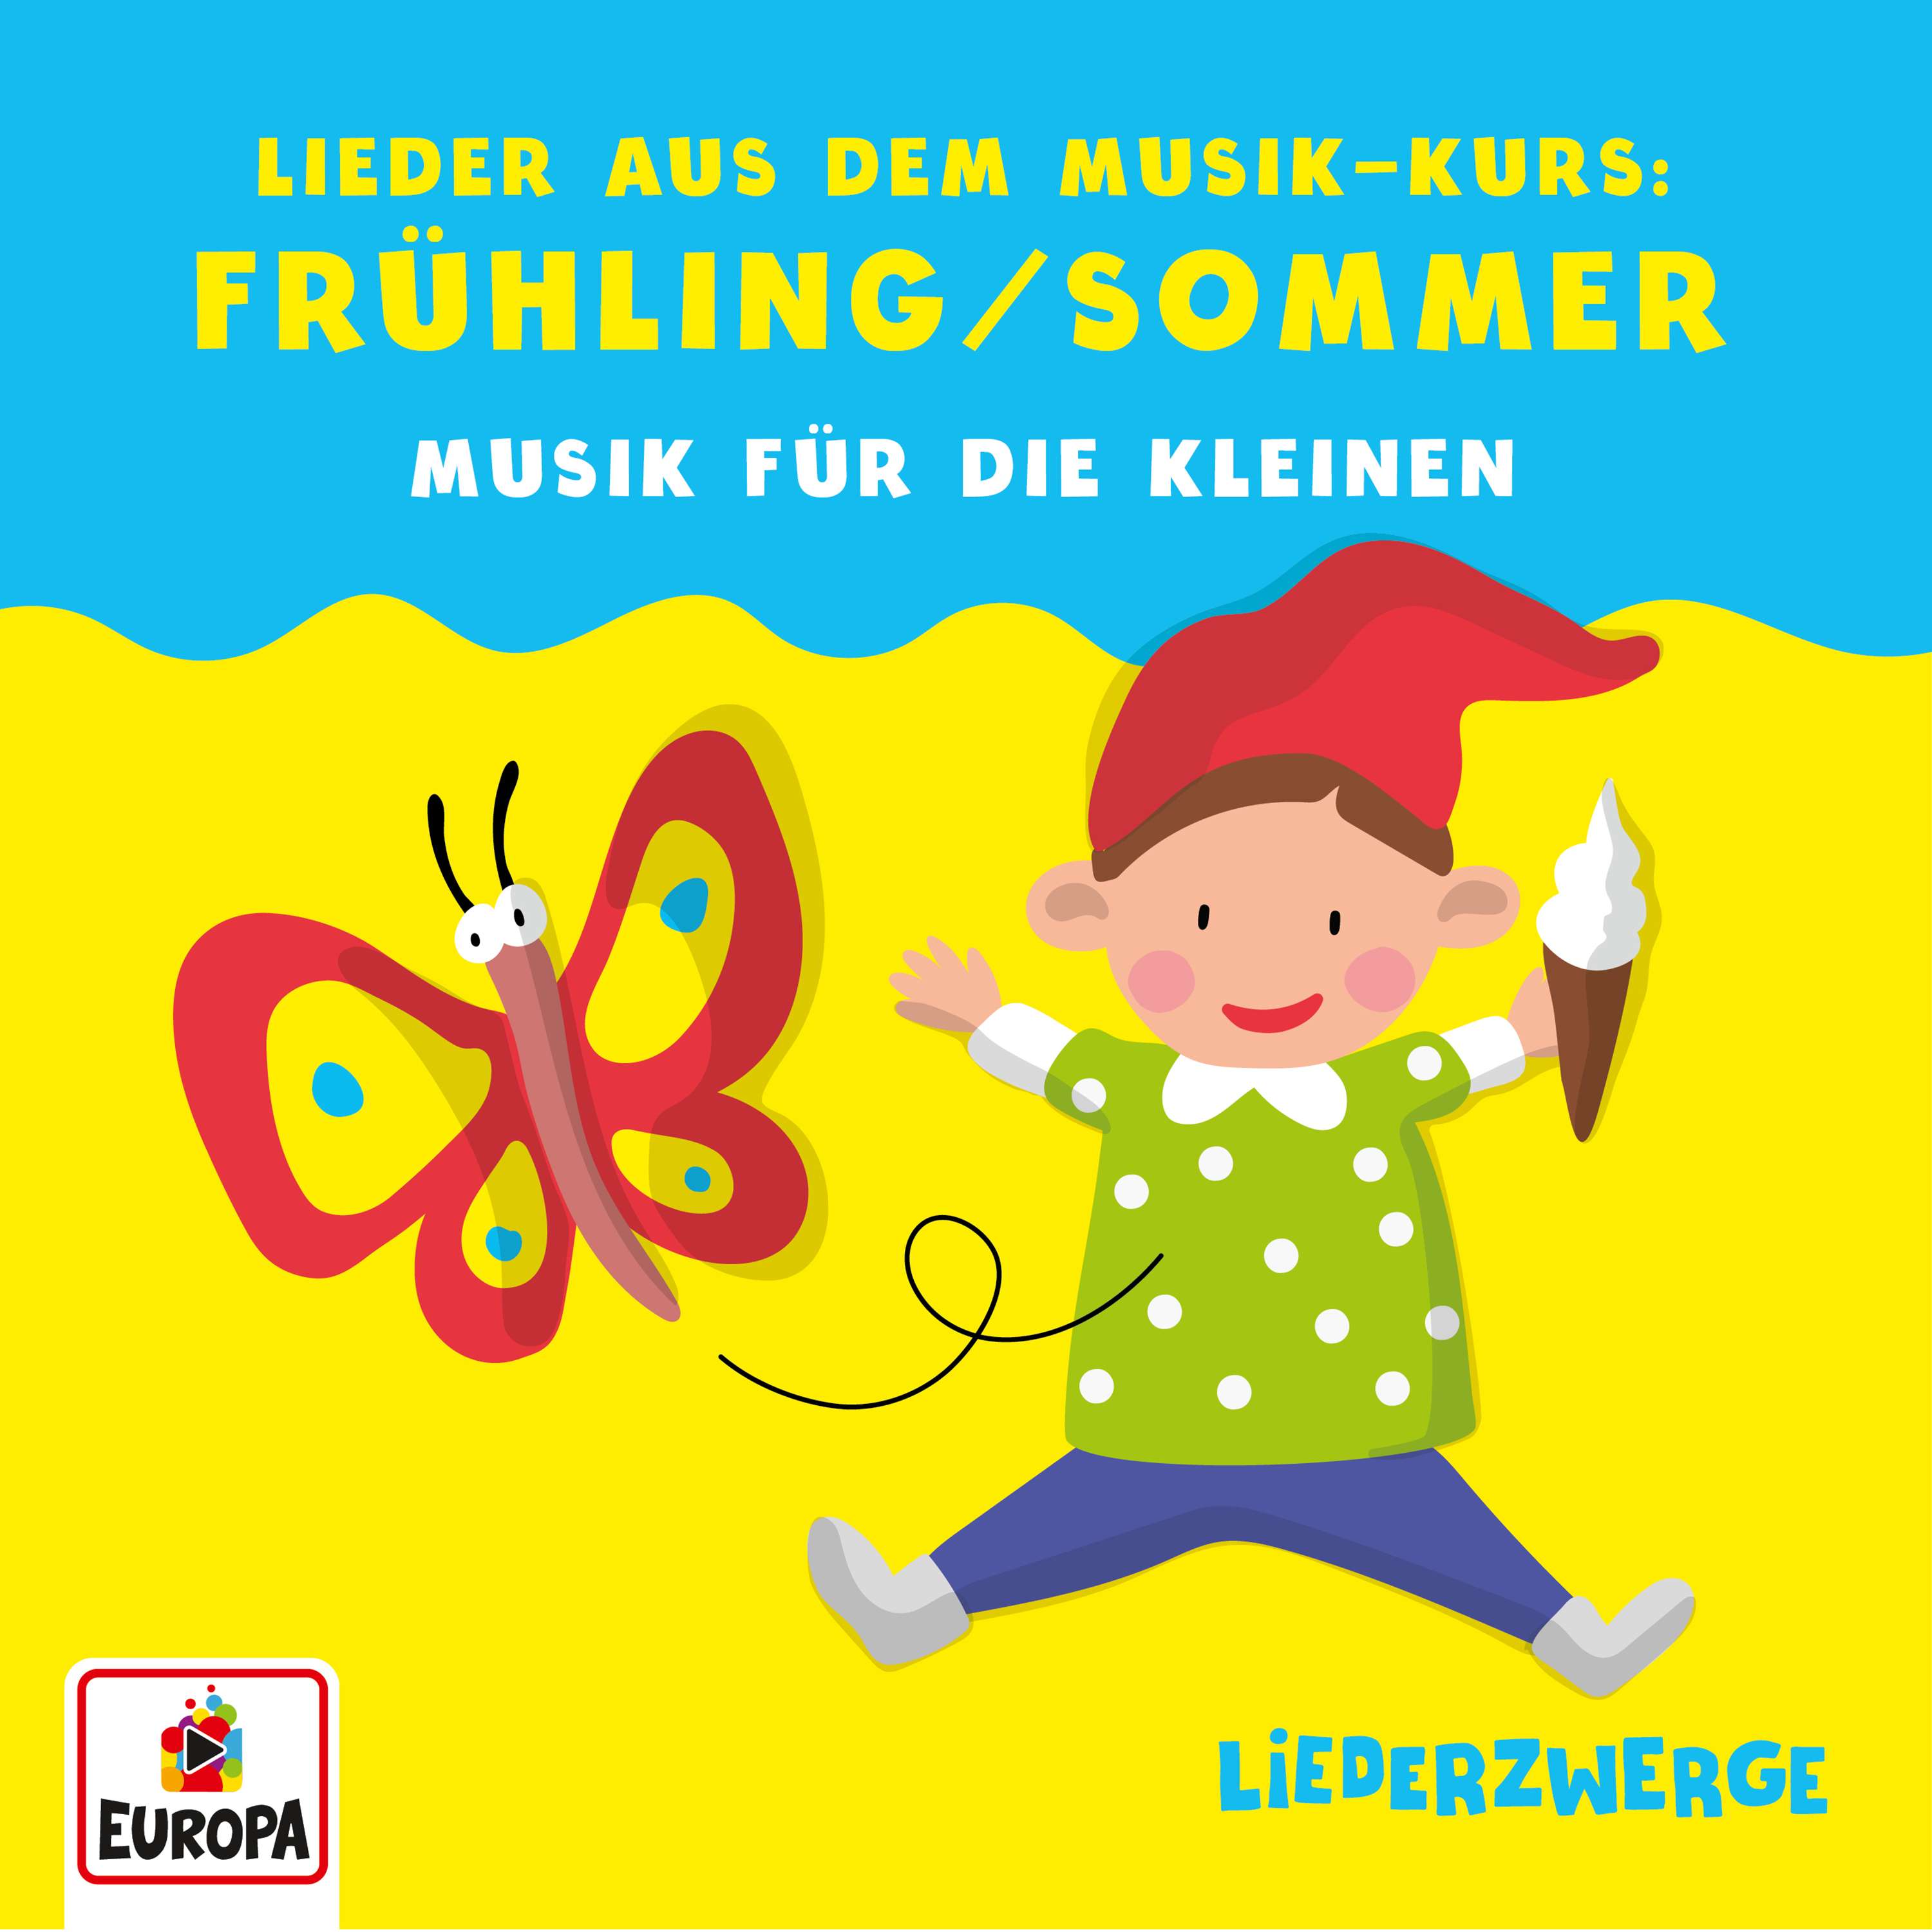 Lena, Felix & die Kita-Kids - Liederzwerge - Lieder aus dem Musik-Kurs, Vol. 2: Frühling/Sommer